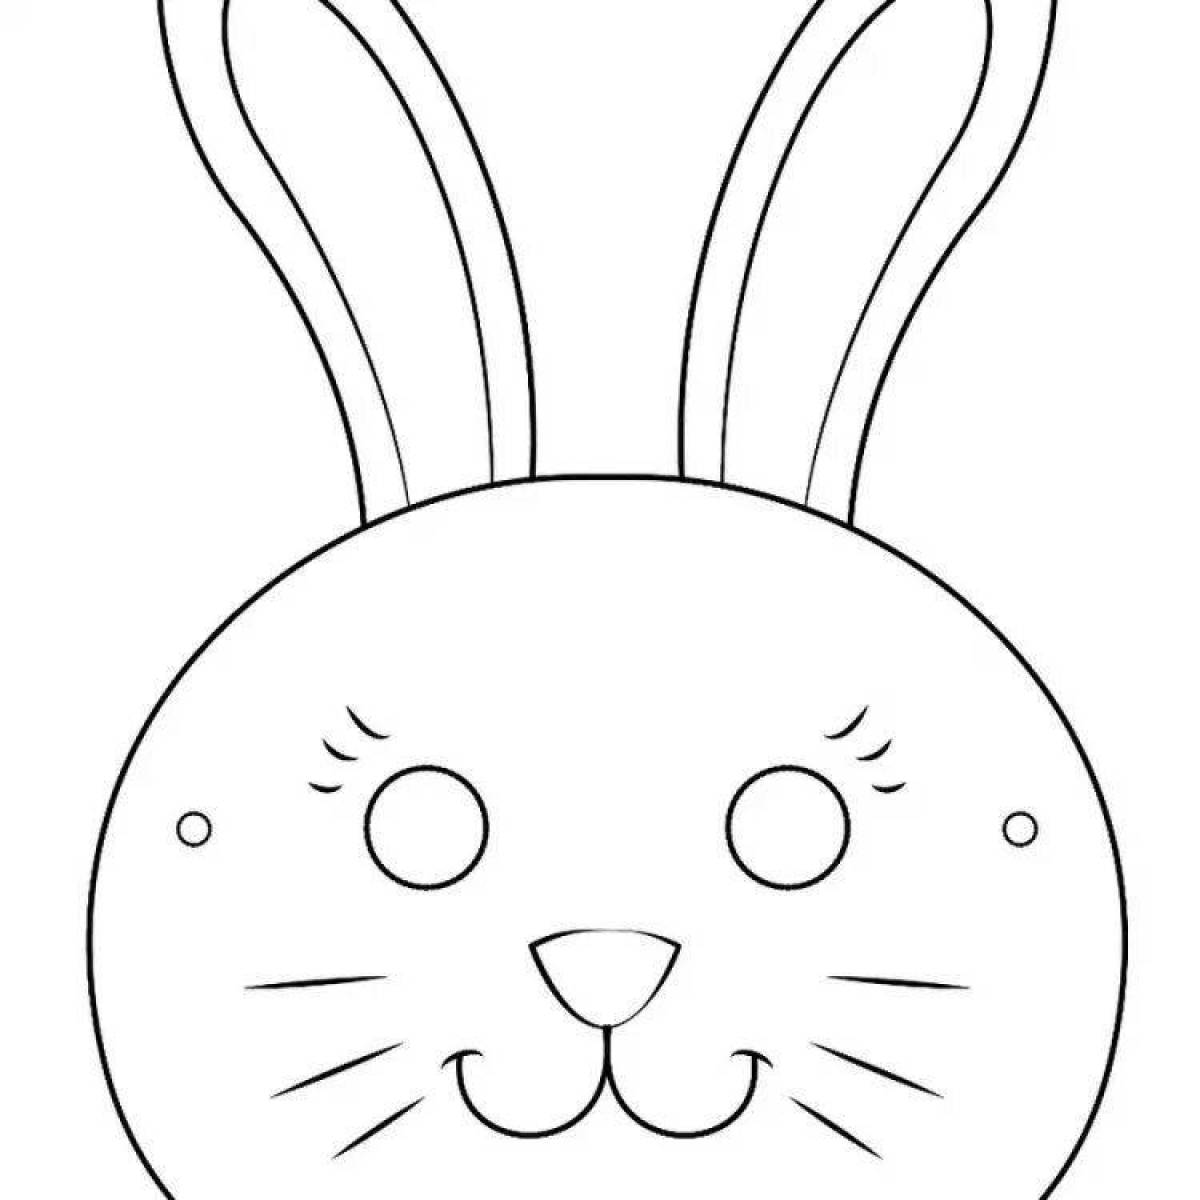 Adorable hare muzzle coloring book